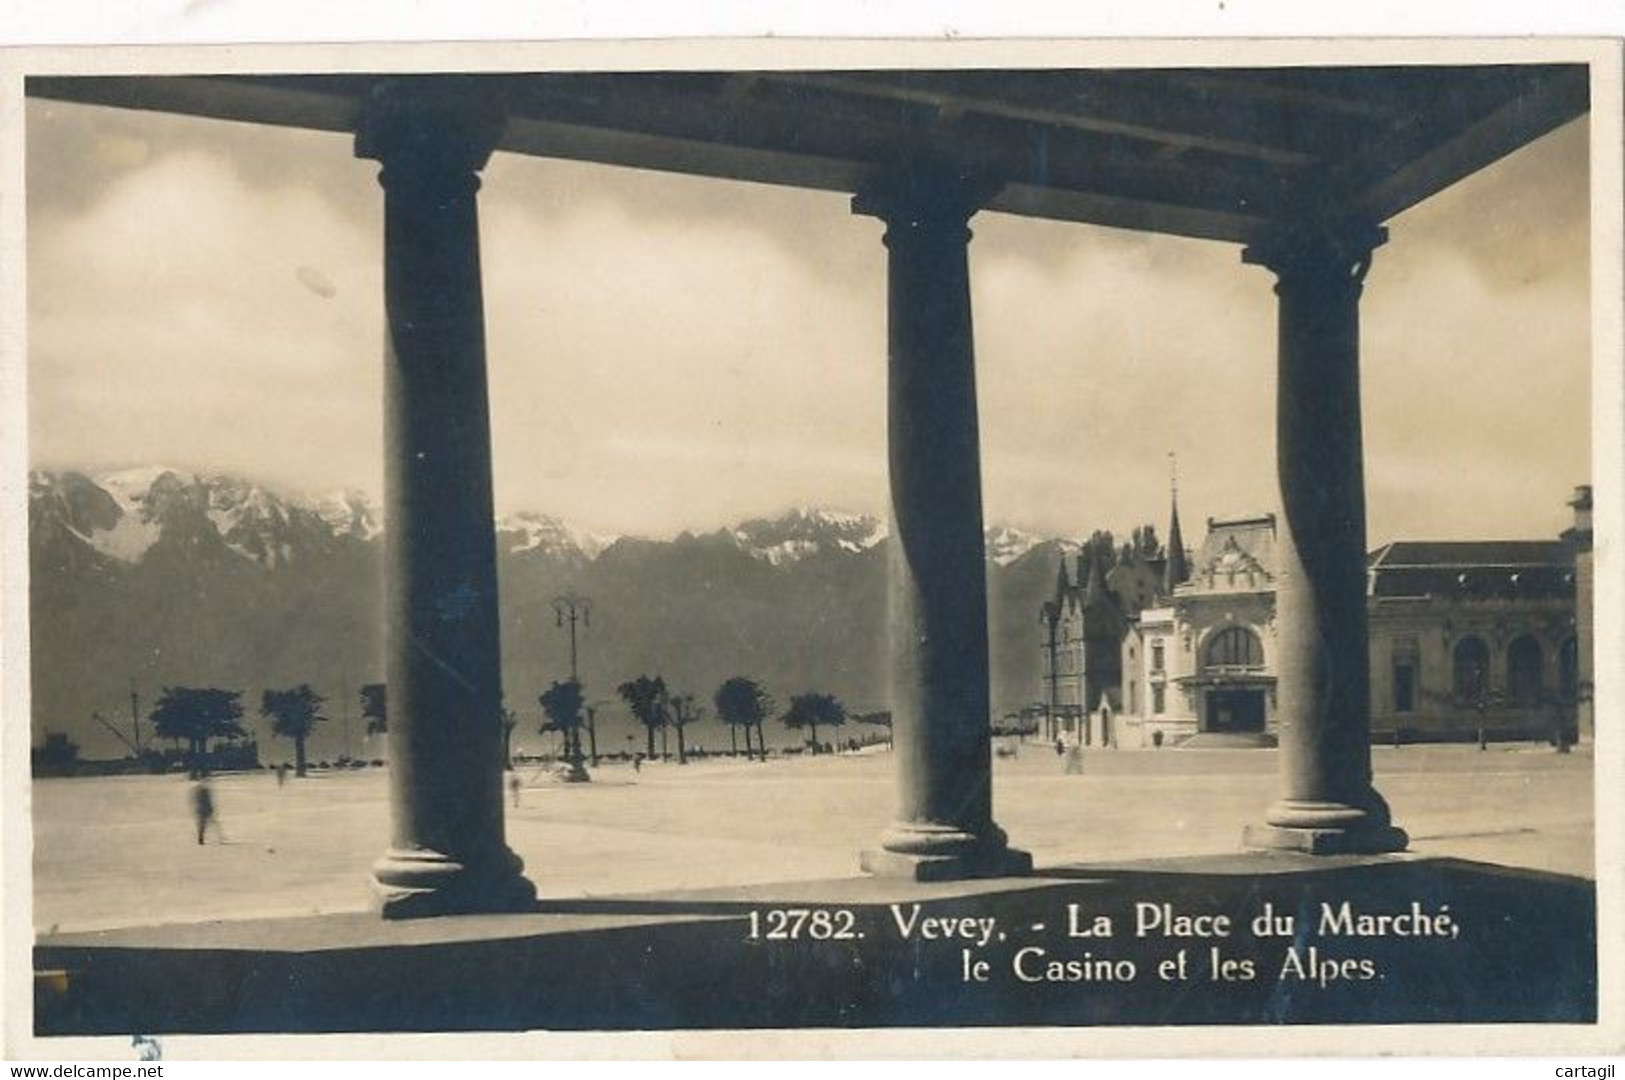 Lot -L473-SUISSE - CANTON DE VAUD - Belle sélection 40 cartes postales ( scans et description)